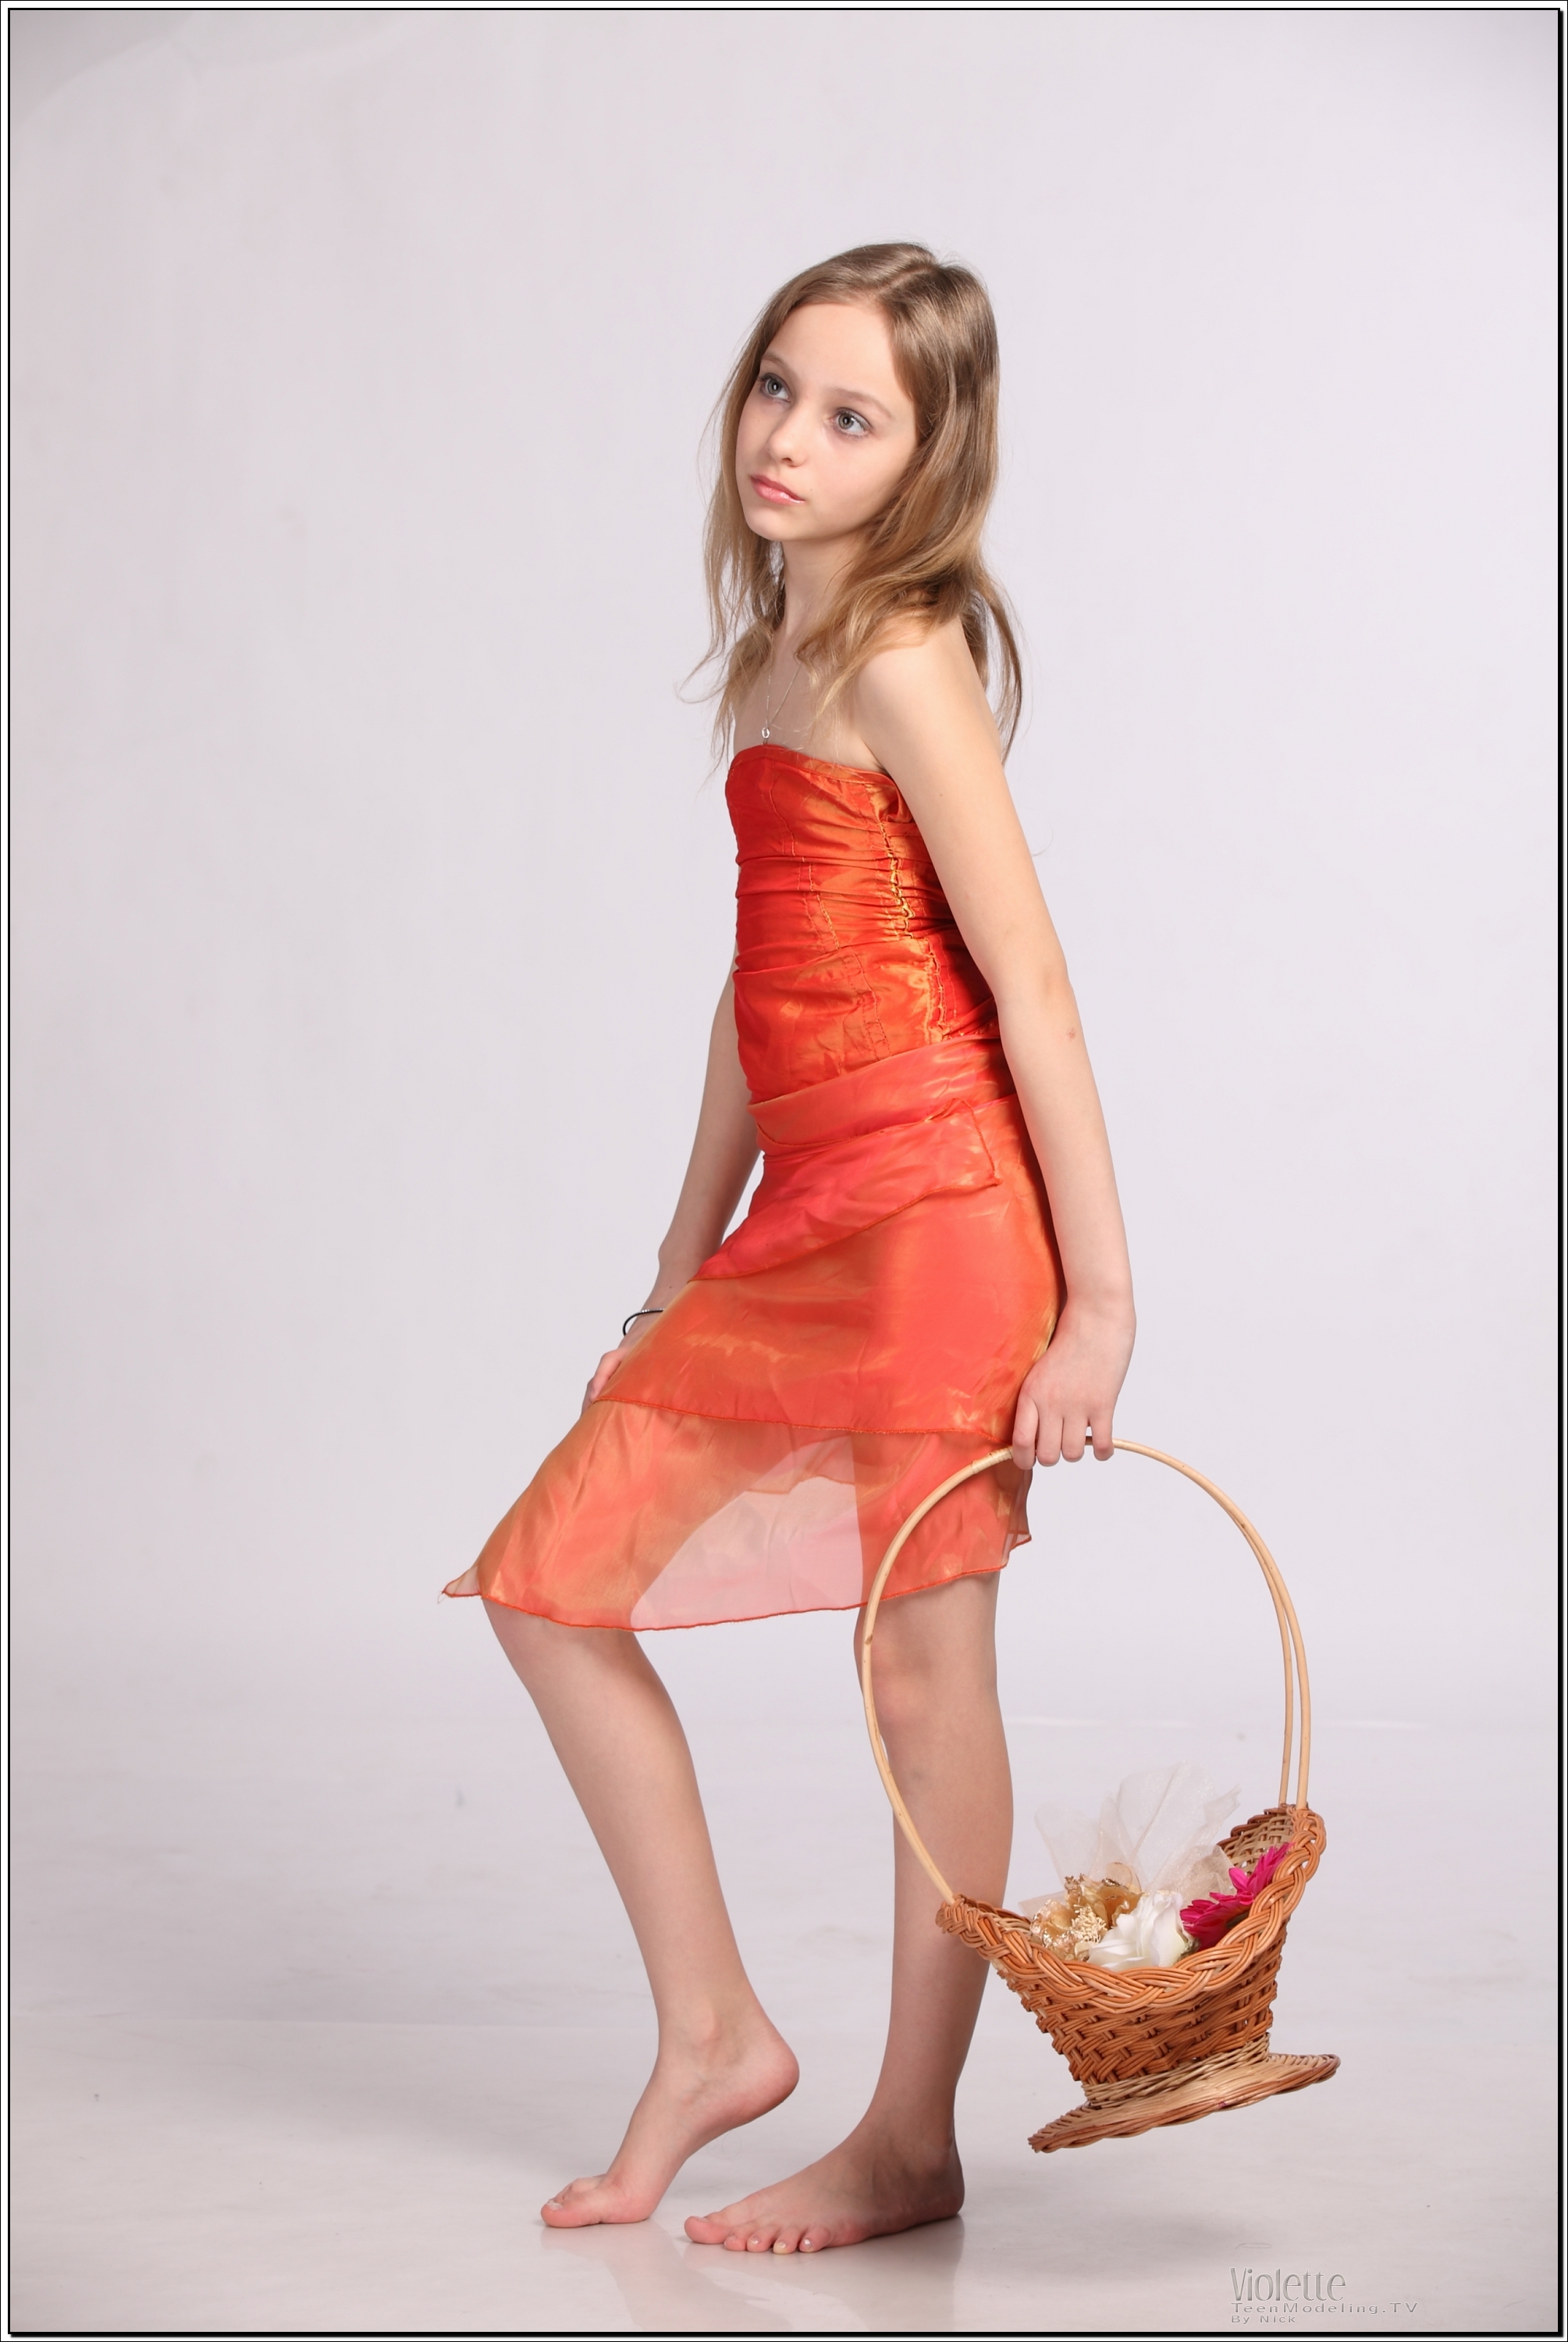 violette_model_orangesheer_teenmodeling_tv_082.jpg